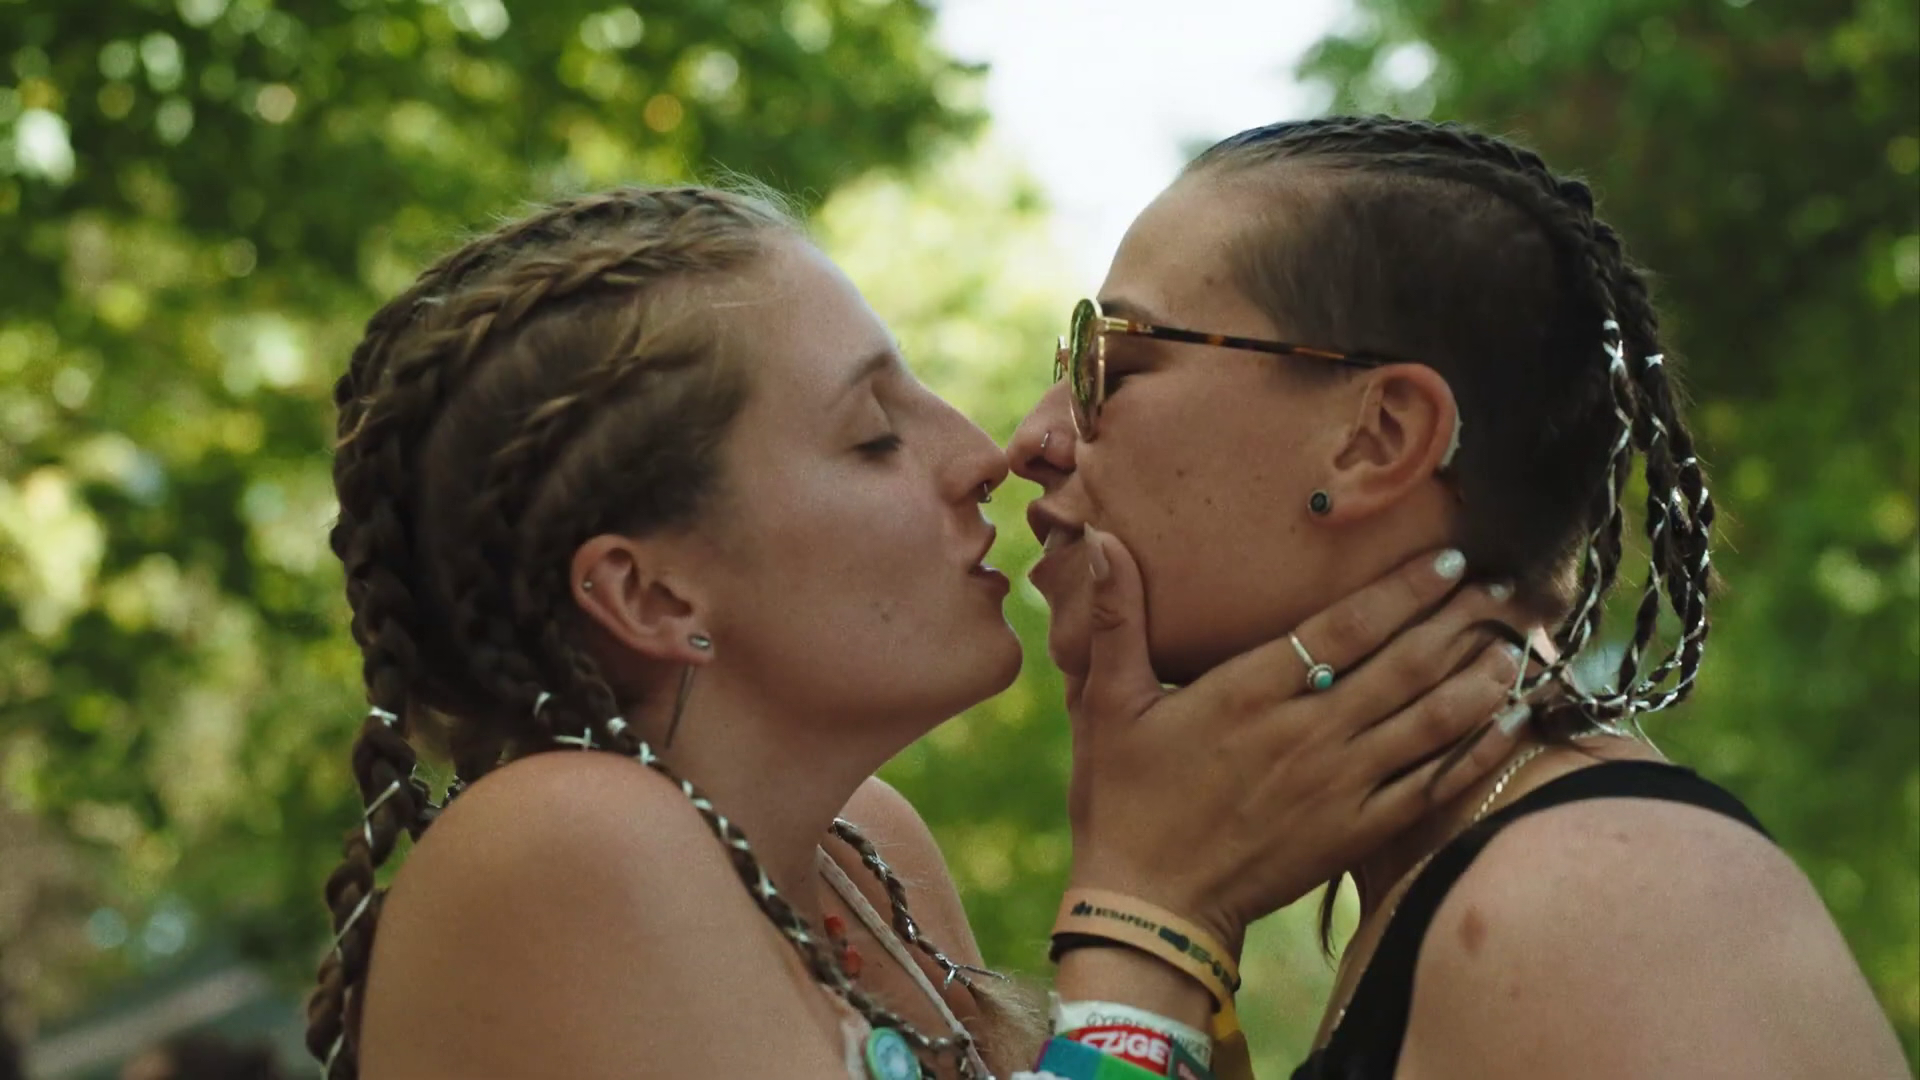 Homoszexuális párok a Sziget Fesztivál reklám videóiban